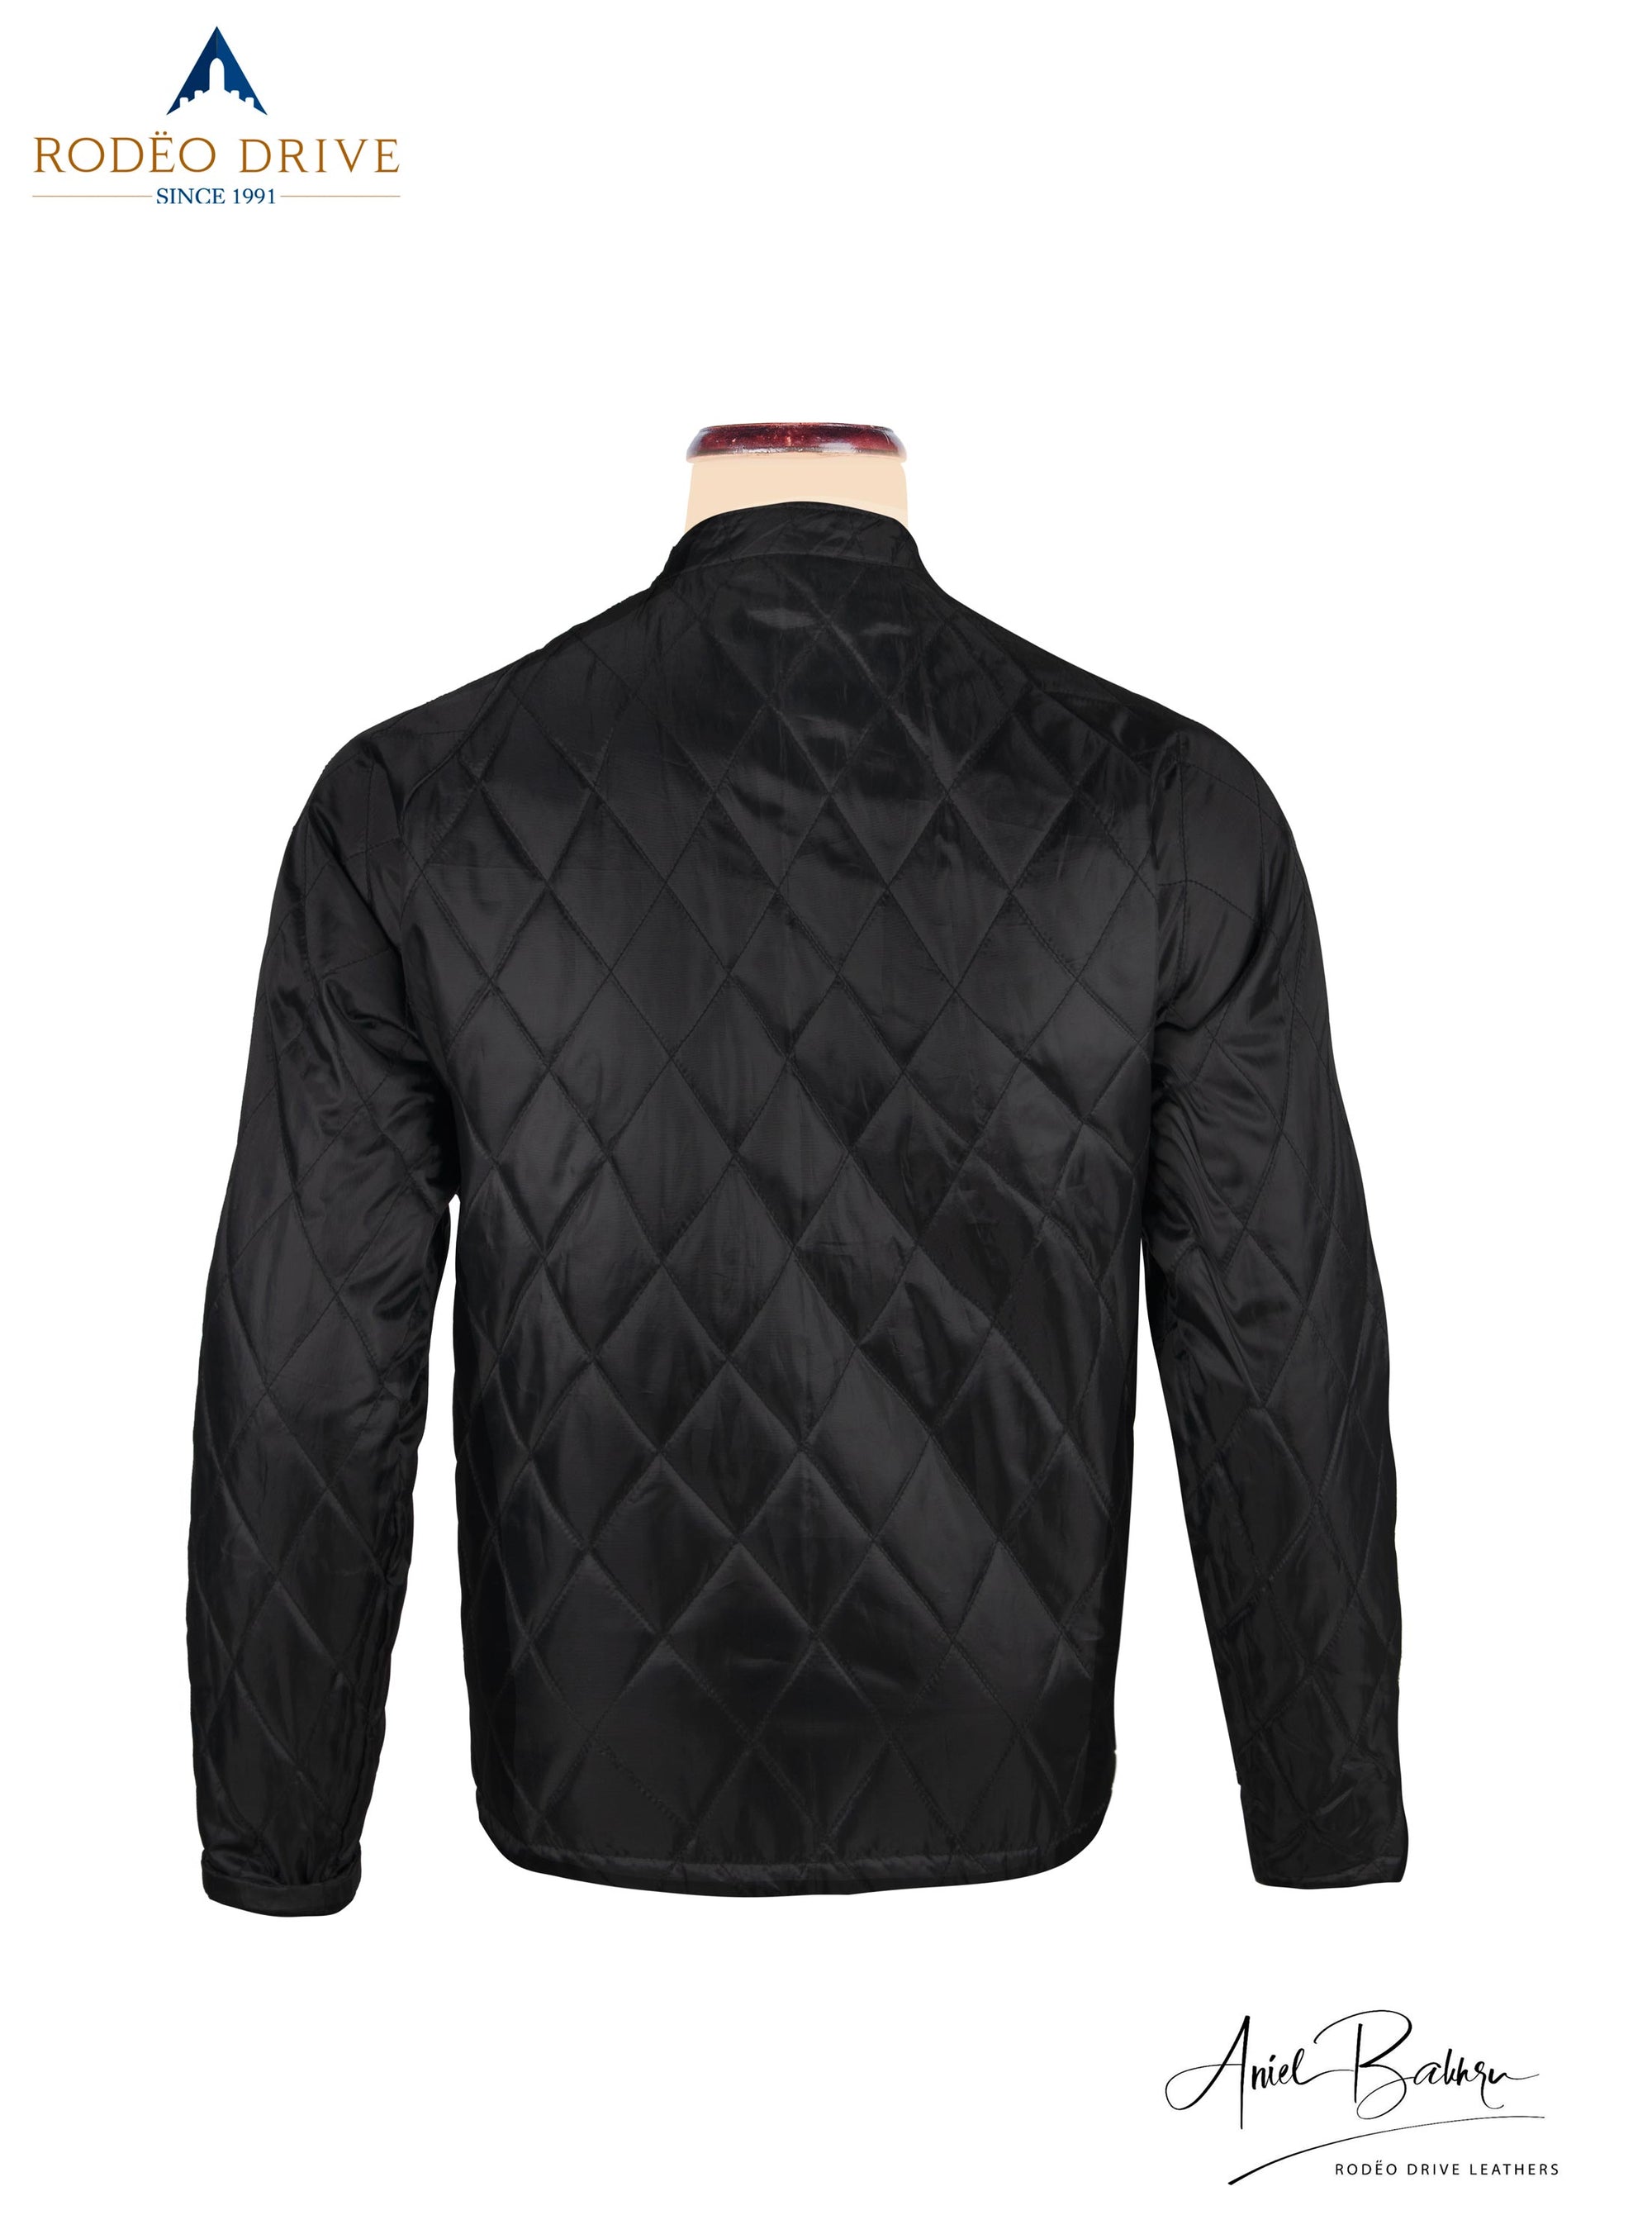 Back side image of black patterned leather  Jacket.